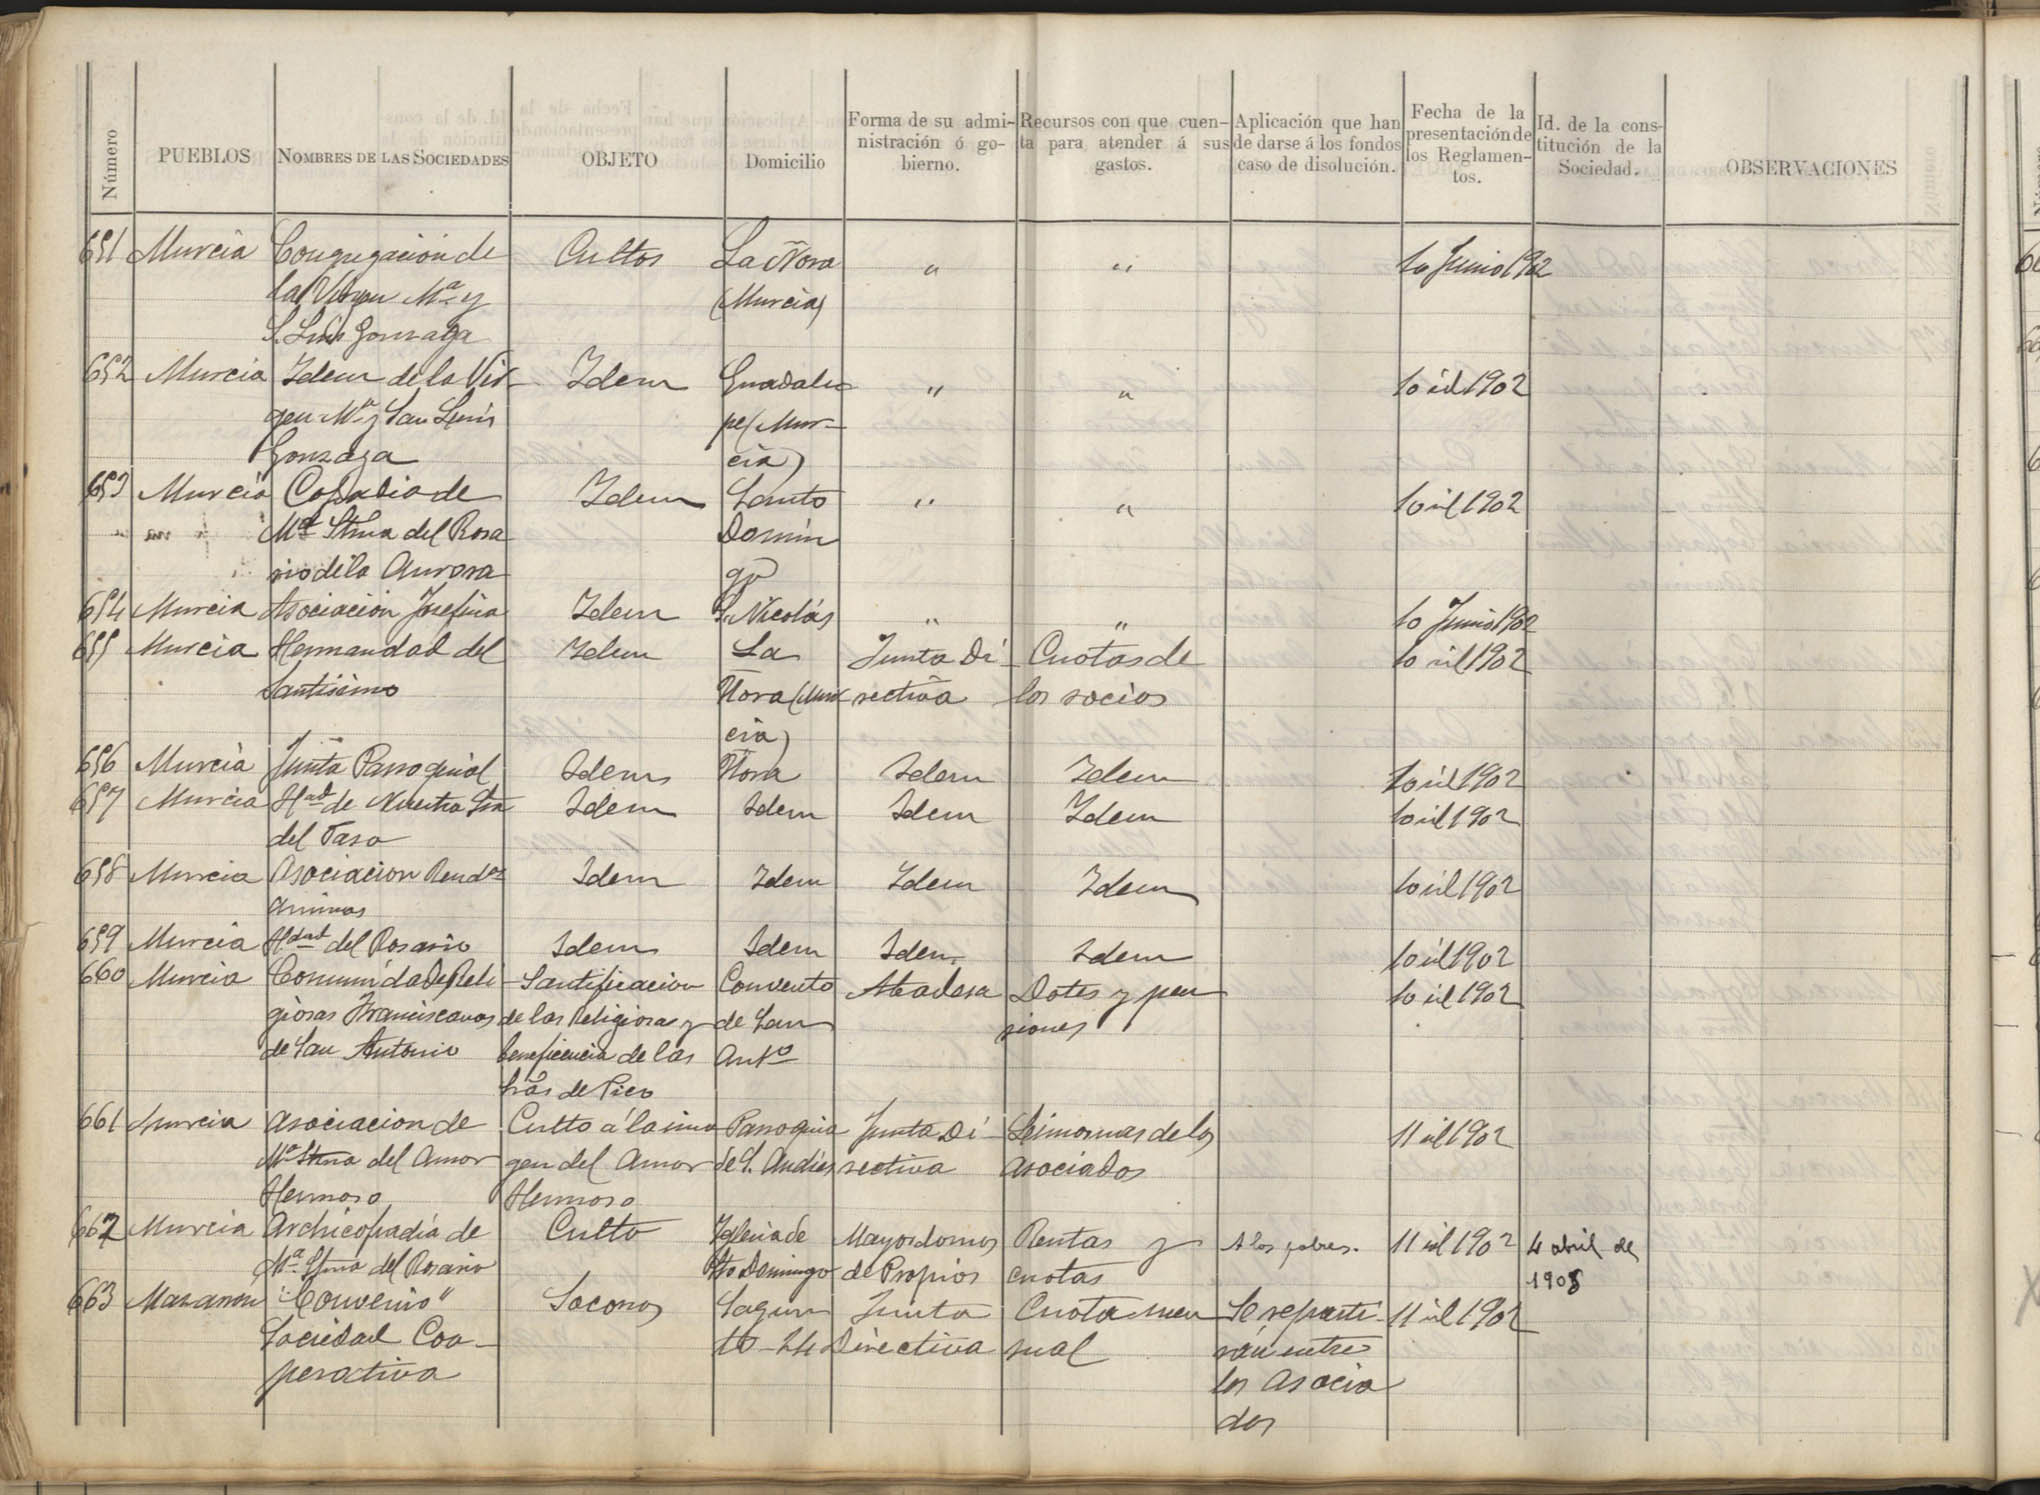 Registro de Asociaciones: nº 651-700. Año 1902.